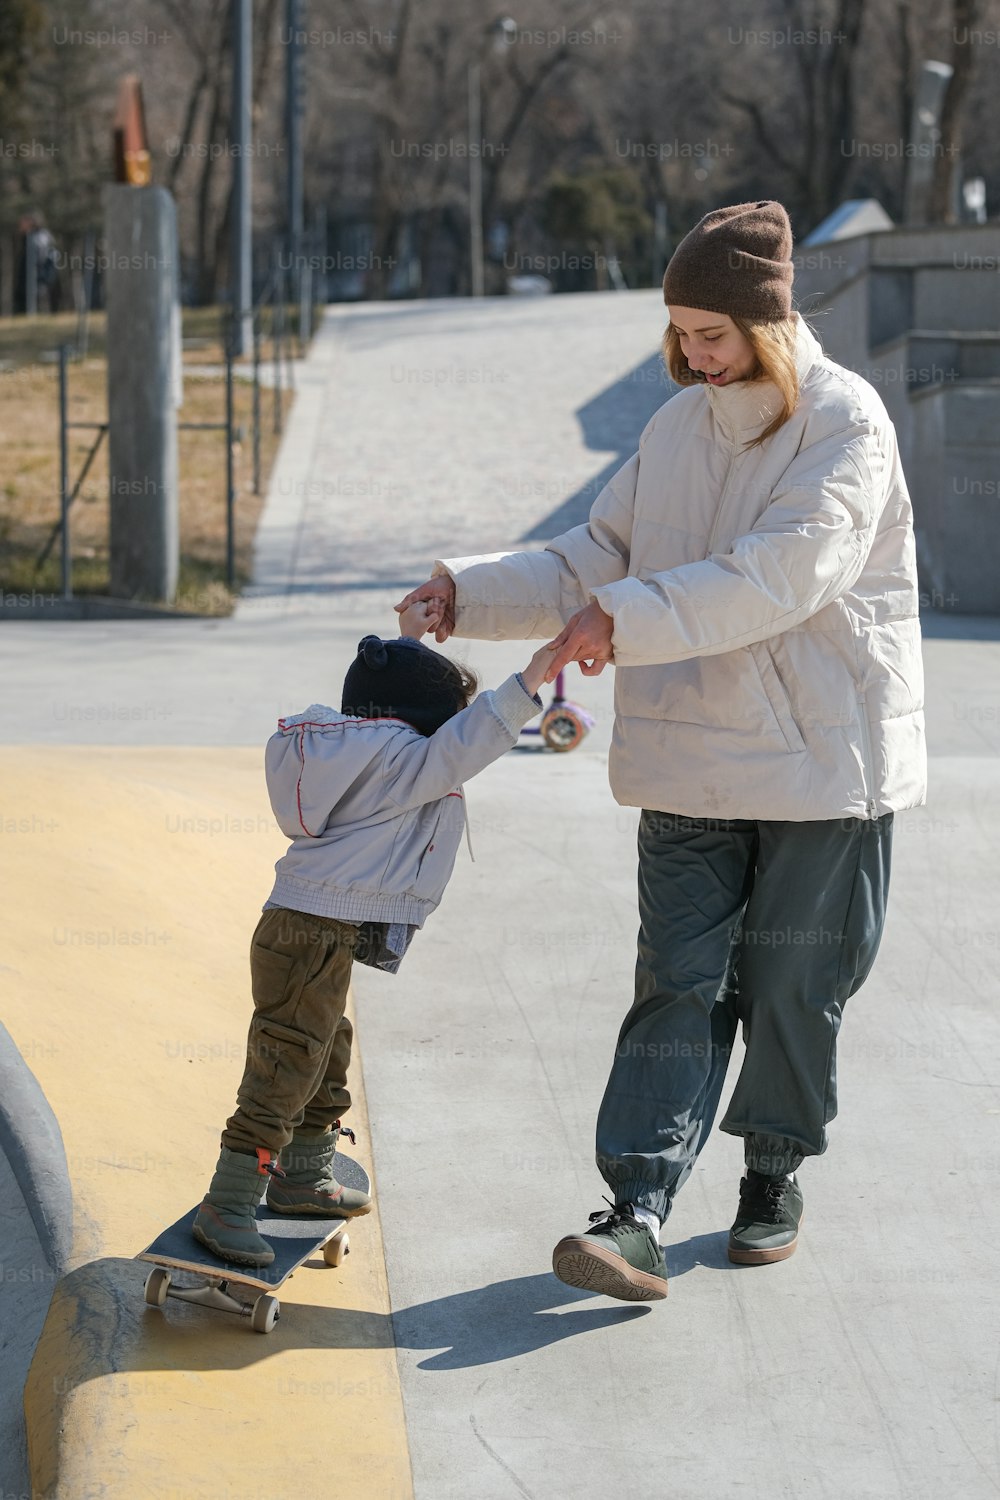 Eine Frau, die einem Kind das Skateboardfahren beibringt